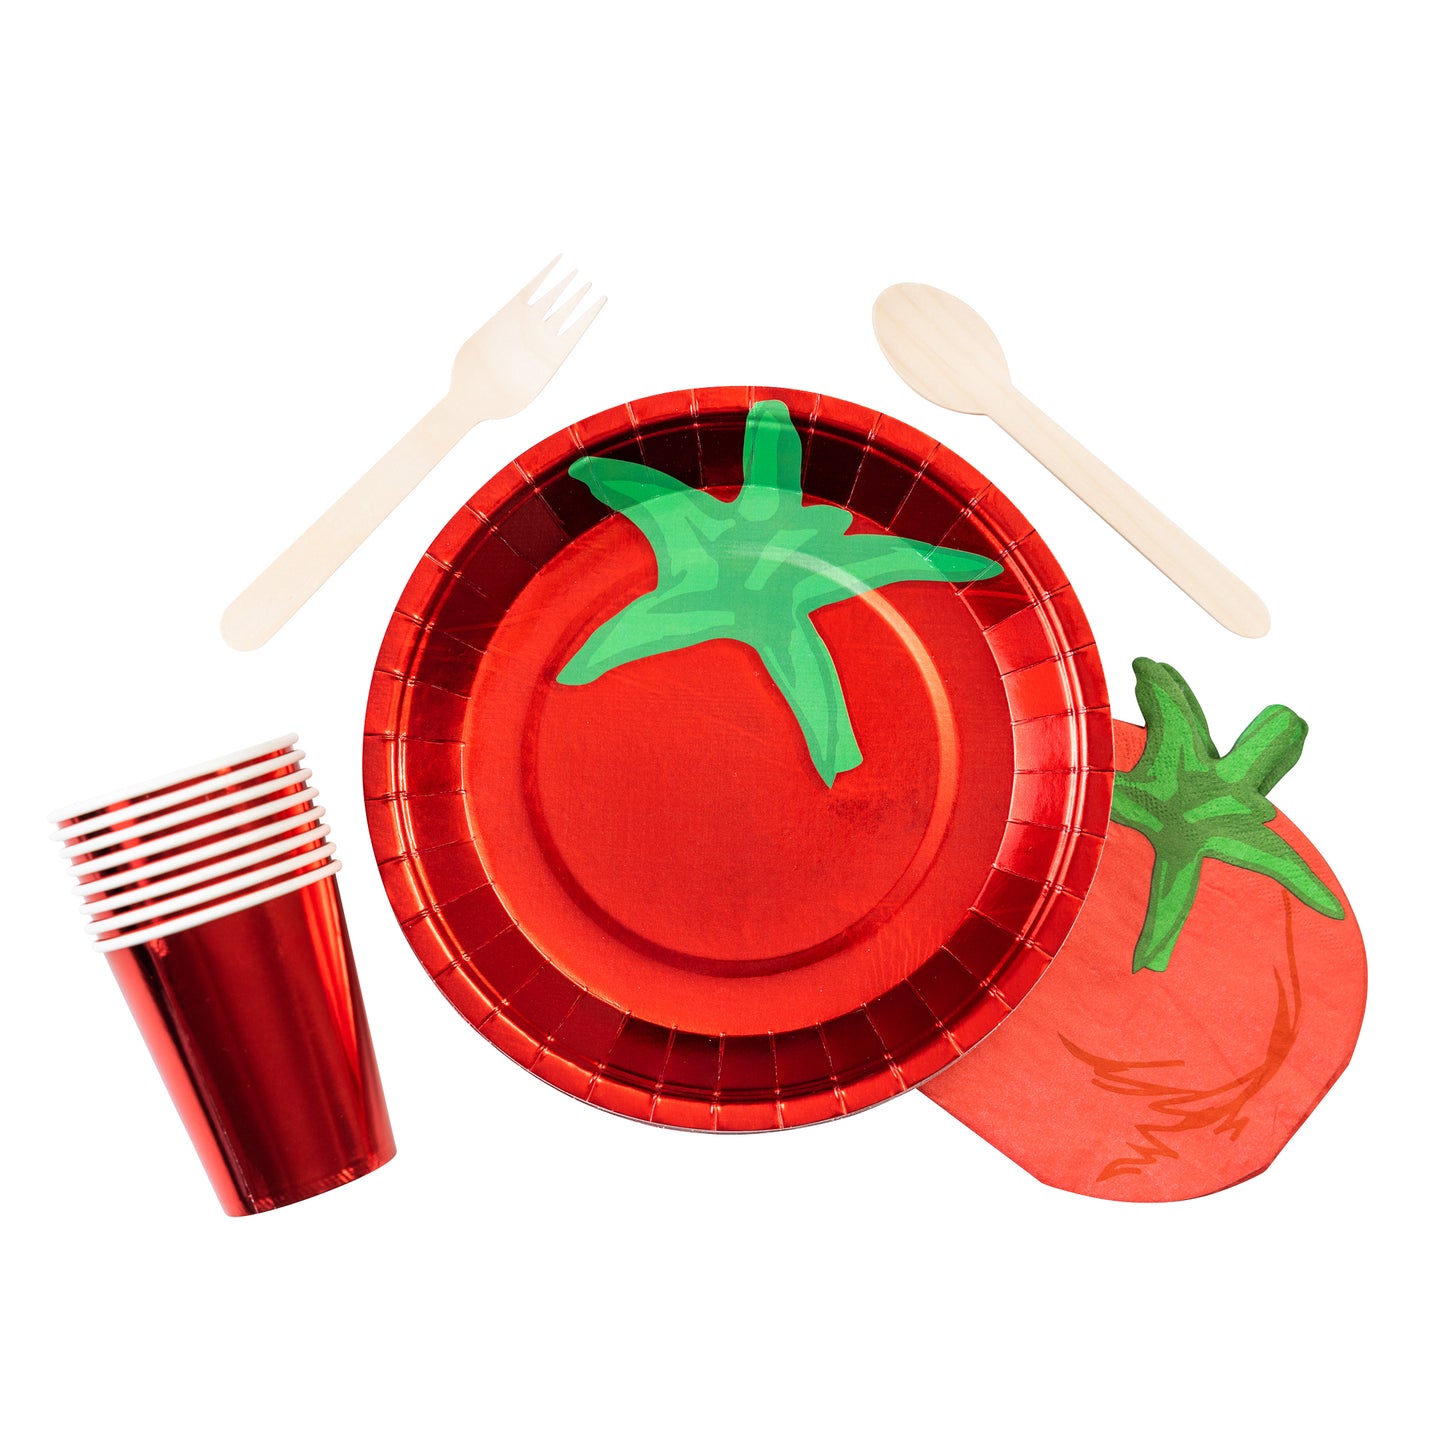 Tomato Plates